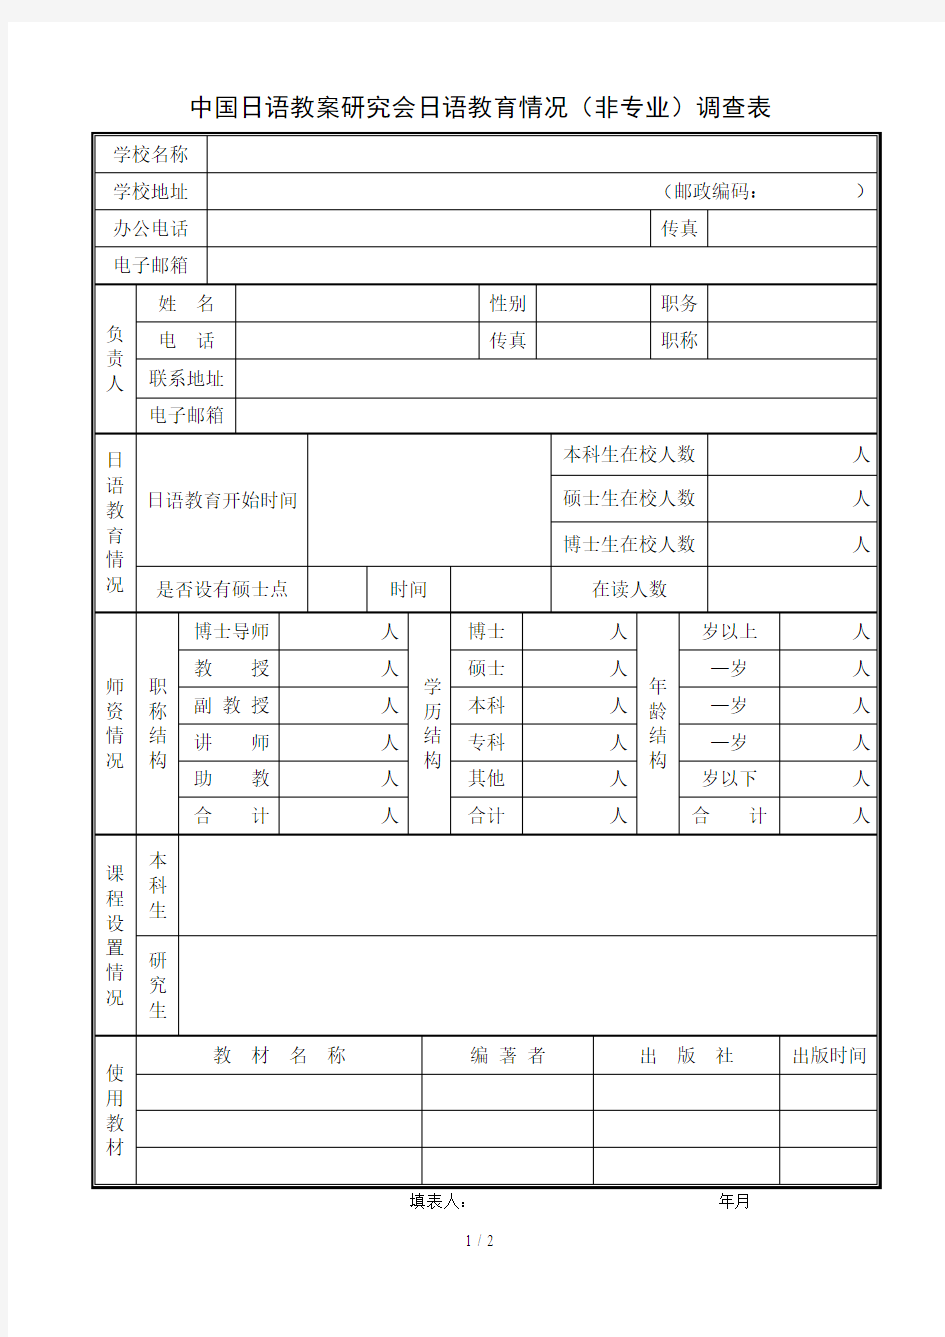 中国日语教学研究会日语教育情况(非专业)调查表